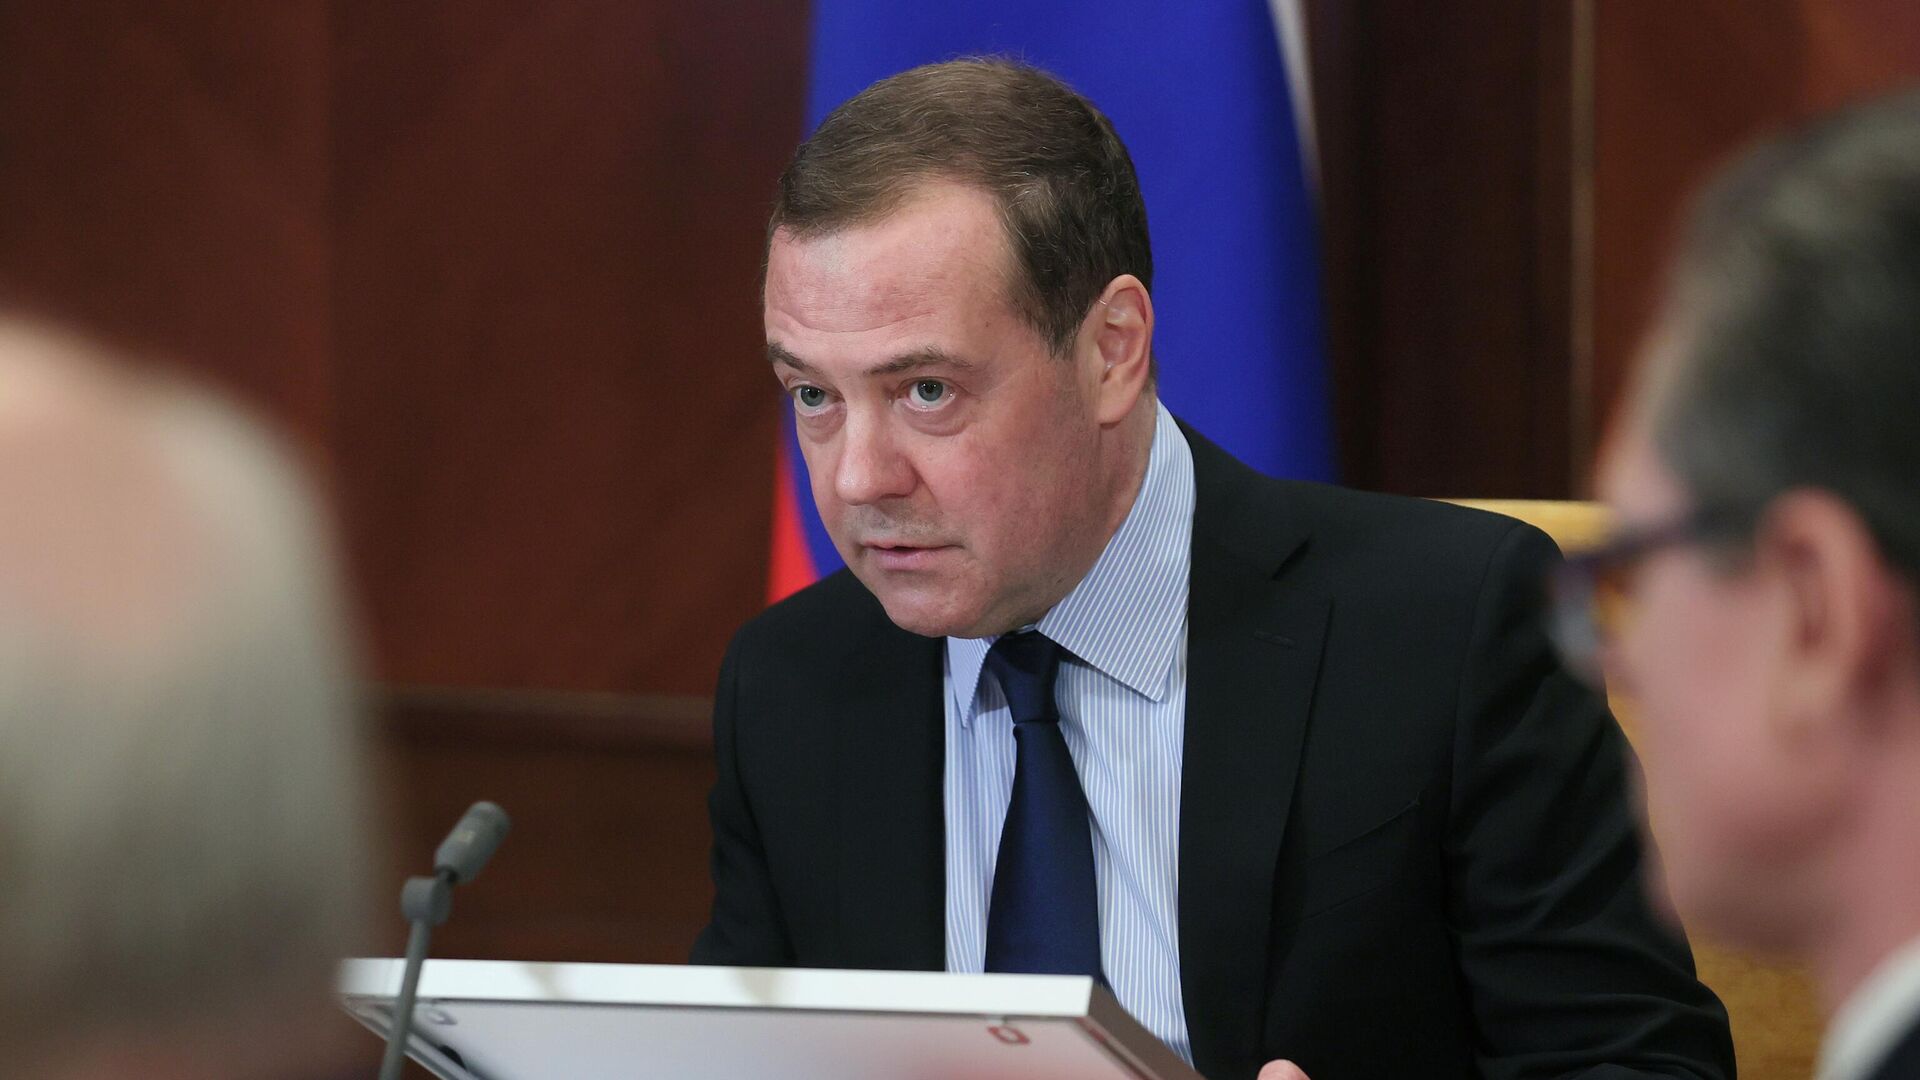 Заместитель председателя Совета безопасности РФ Дмитрий Медведев проводит заседание рабочей группы Военно-промышленной комиссии РФ